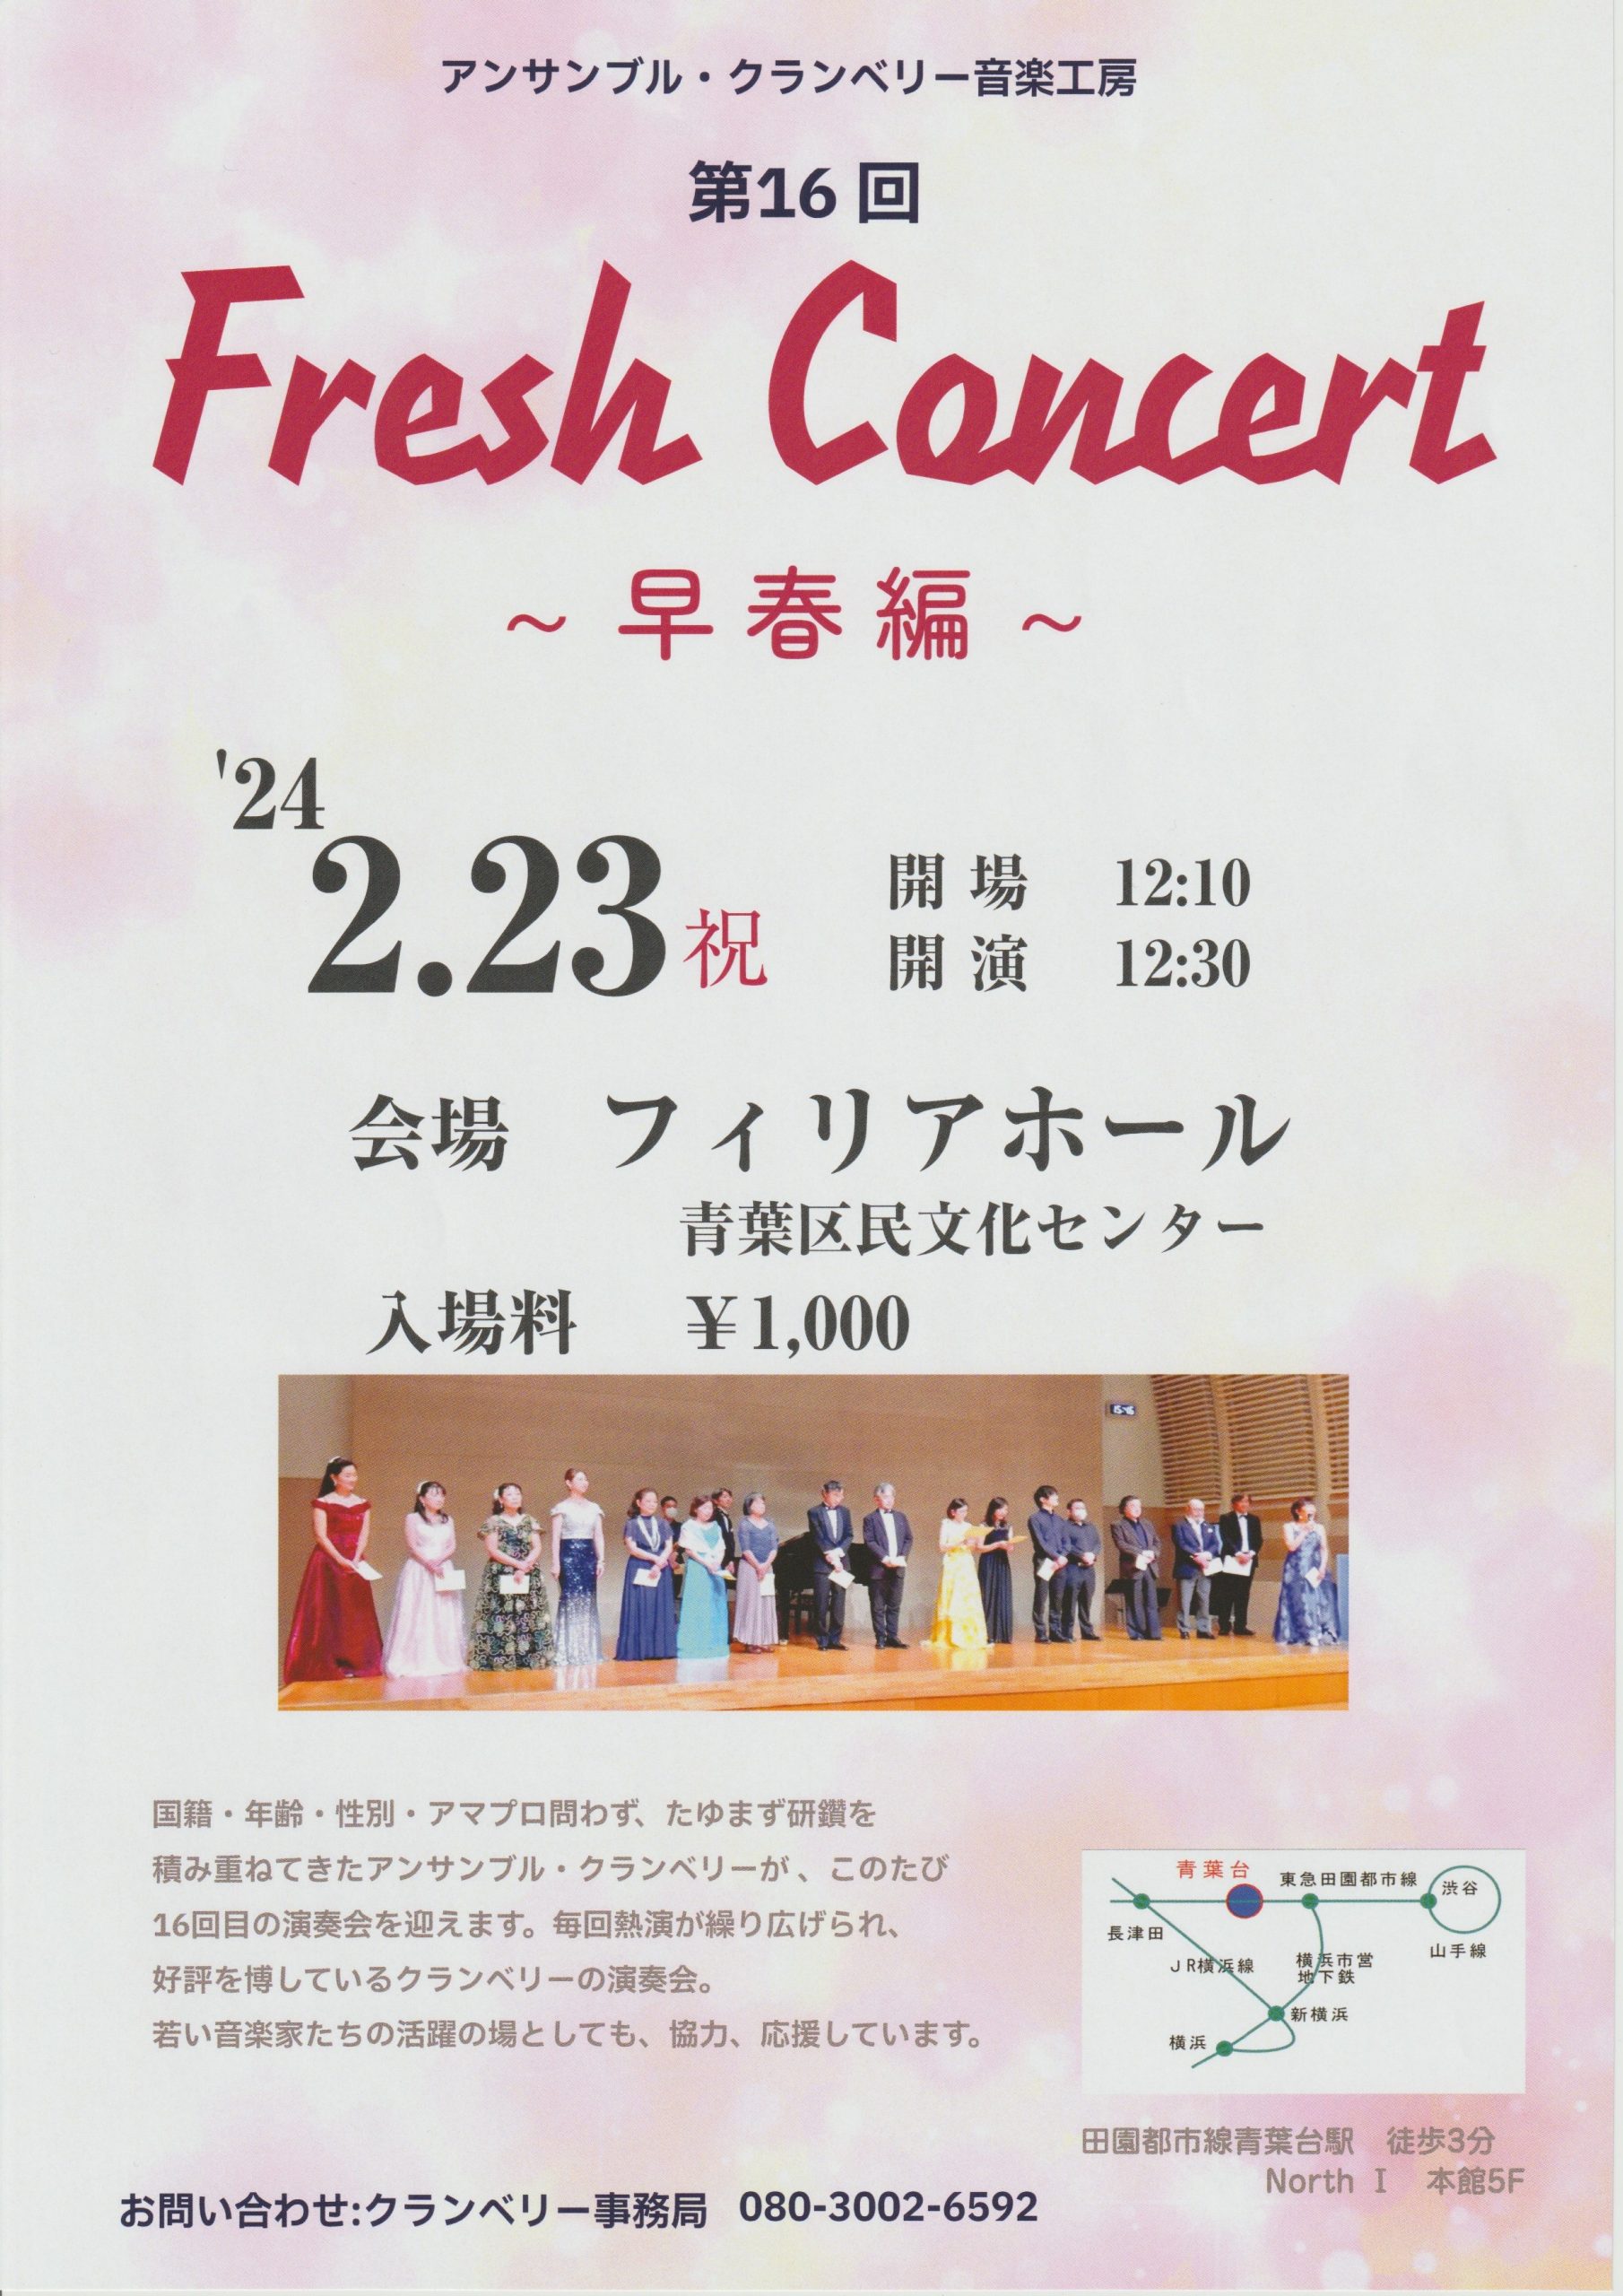 アンサンブル・クランベリー音楽工房 第16回Fresh Concert〜早春編〜-